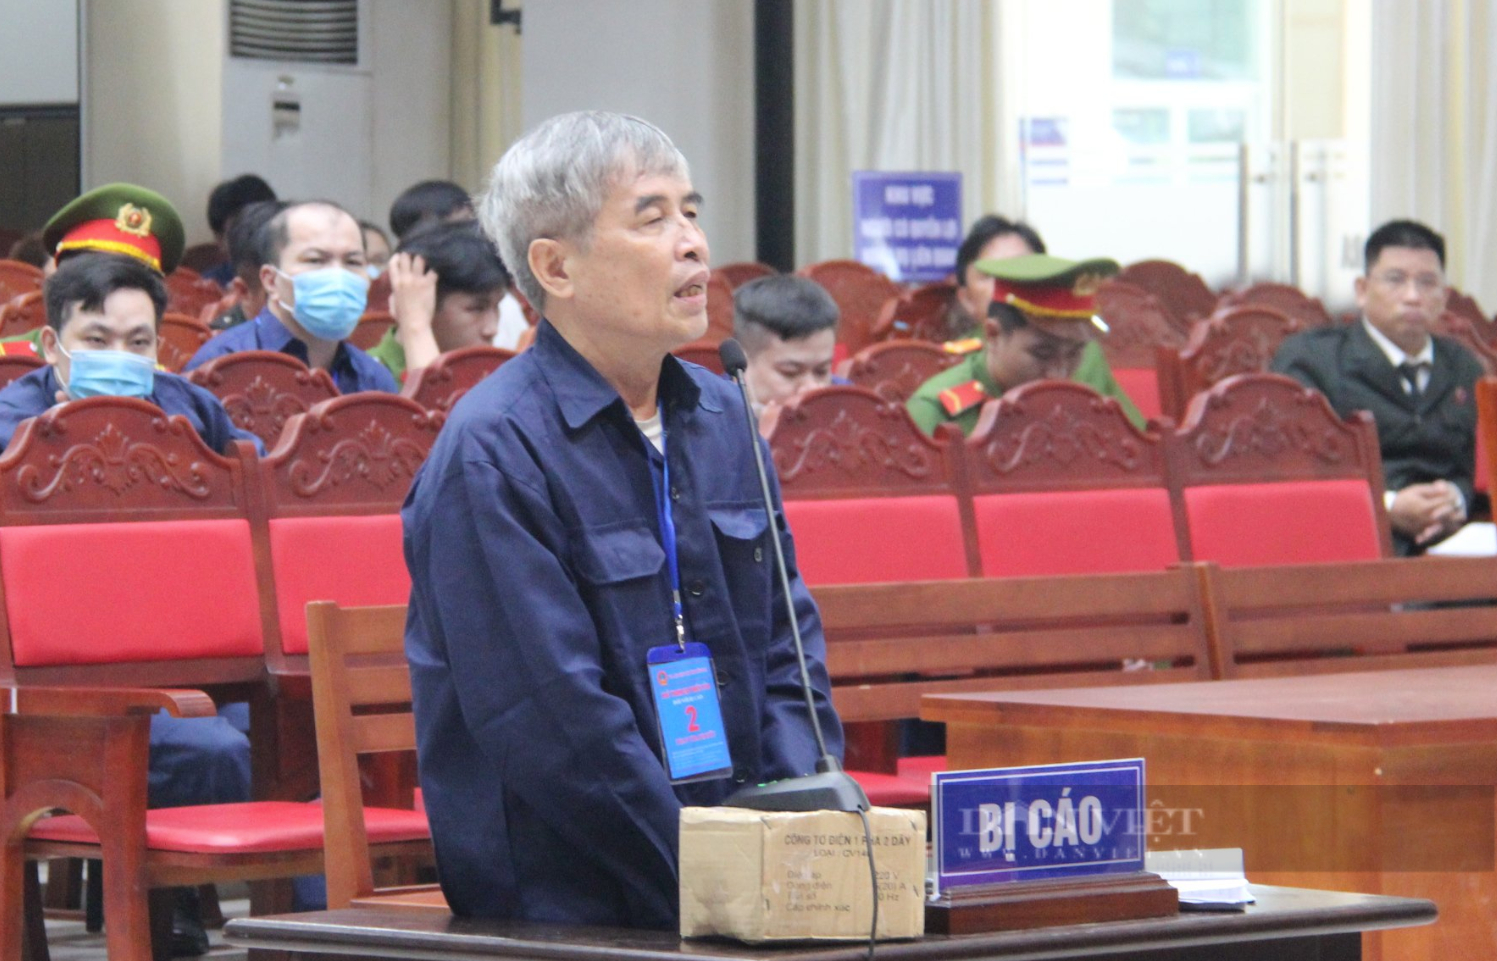 Đại án xăng lậu: Phan Thanh Hữu khai hưởng lợi chưa đến 2.000 đồng/lít vì phải chi tiền bôi trơn, cước,… - Ảnh 1.